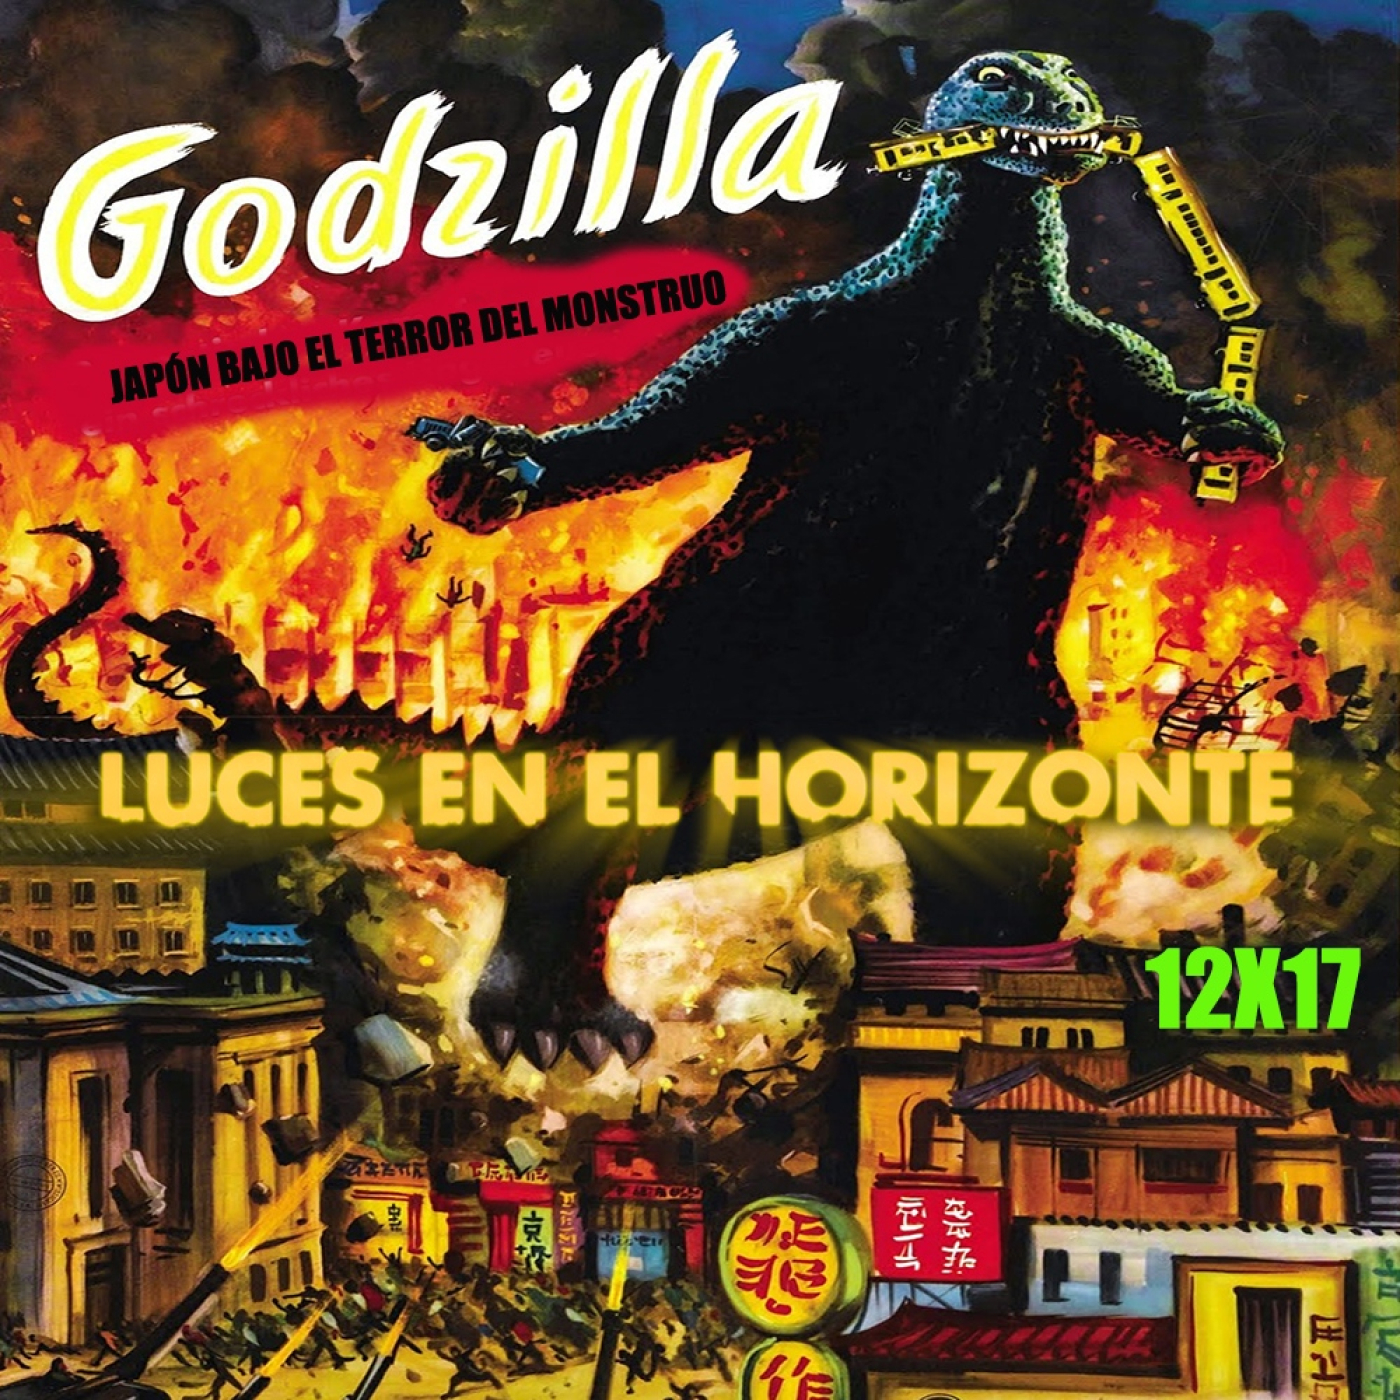 Godzilla [Japón bajo el terror del monstruo] - Luces en el Horizonte 12X17 - Episodio exclusivo para mecenas